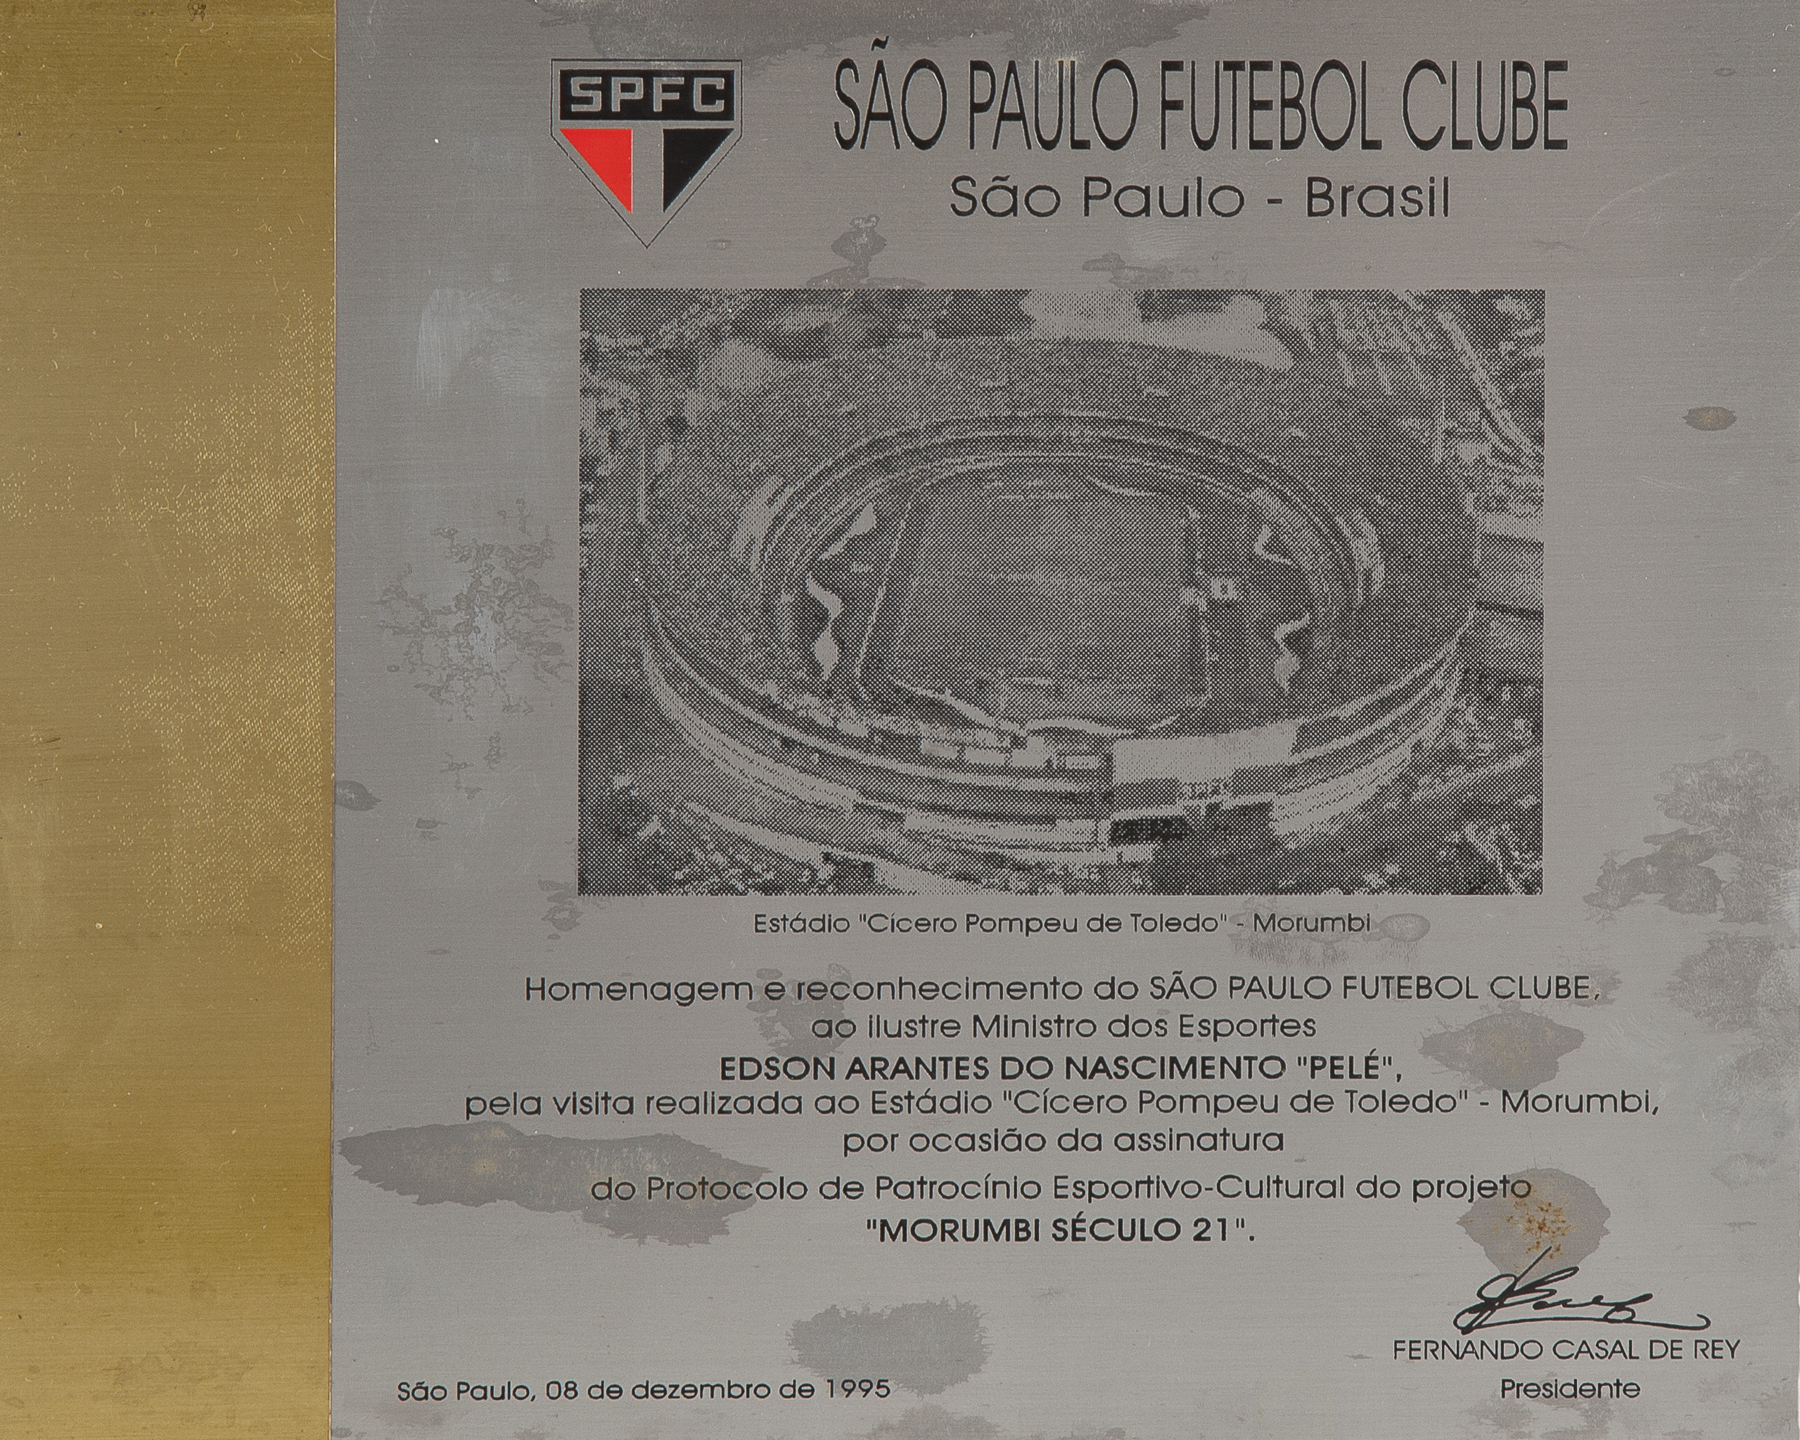 PELÉ DECEMBER 8, 1995, SÃO PAULO FOOTBALL CLUB PLAQUE